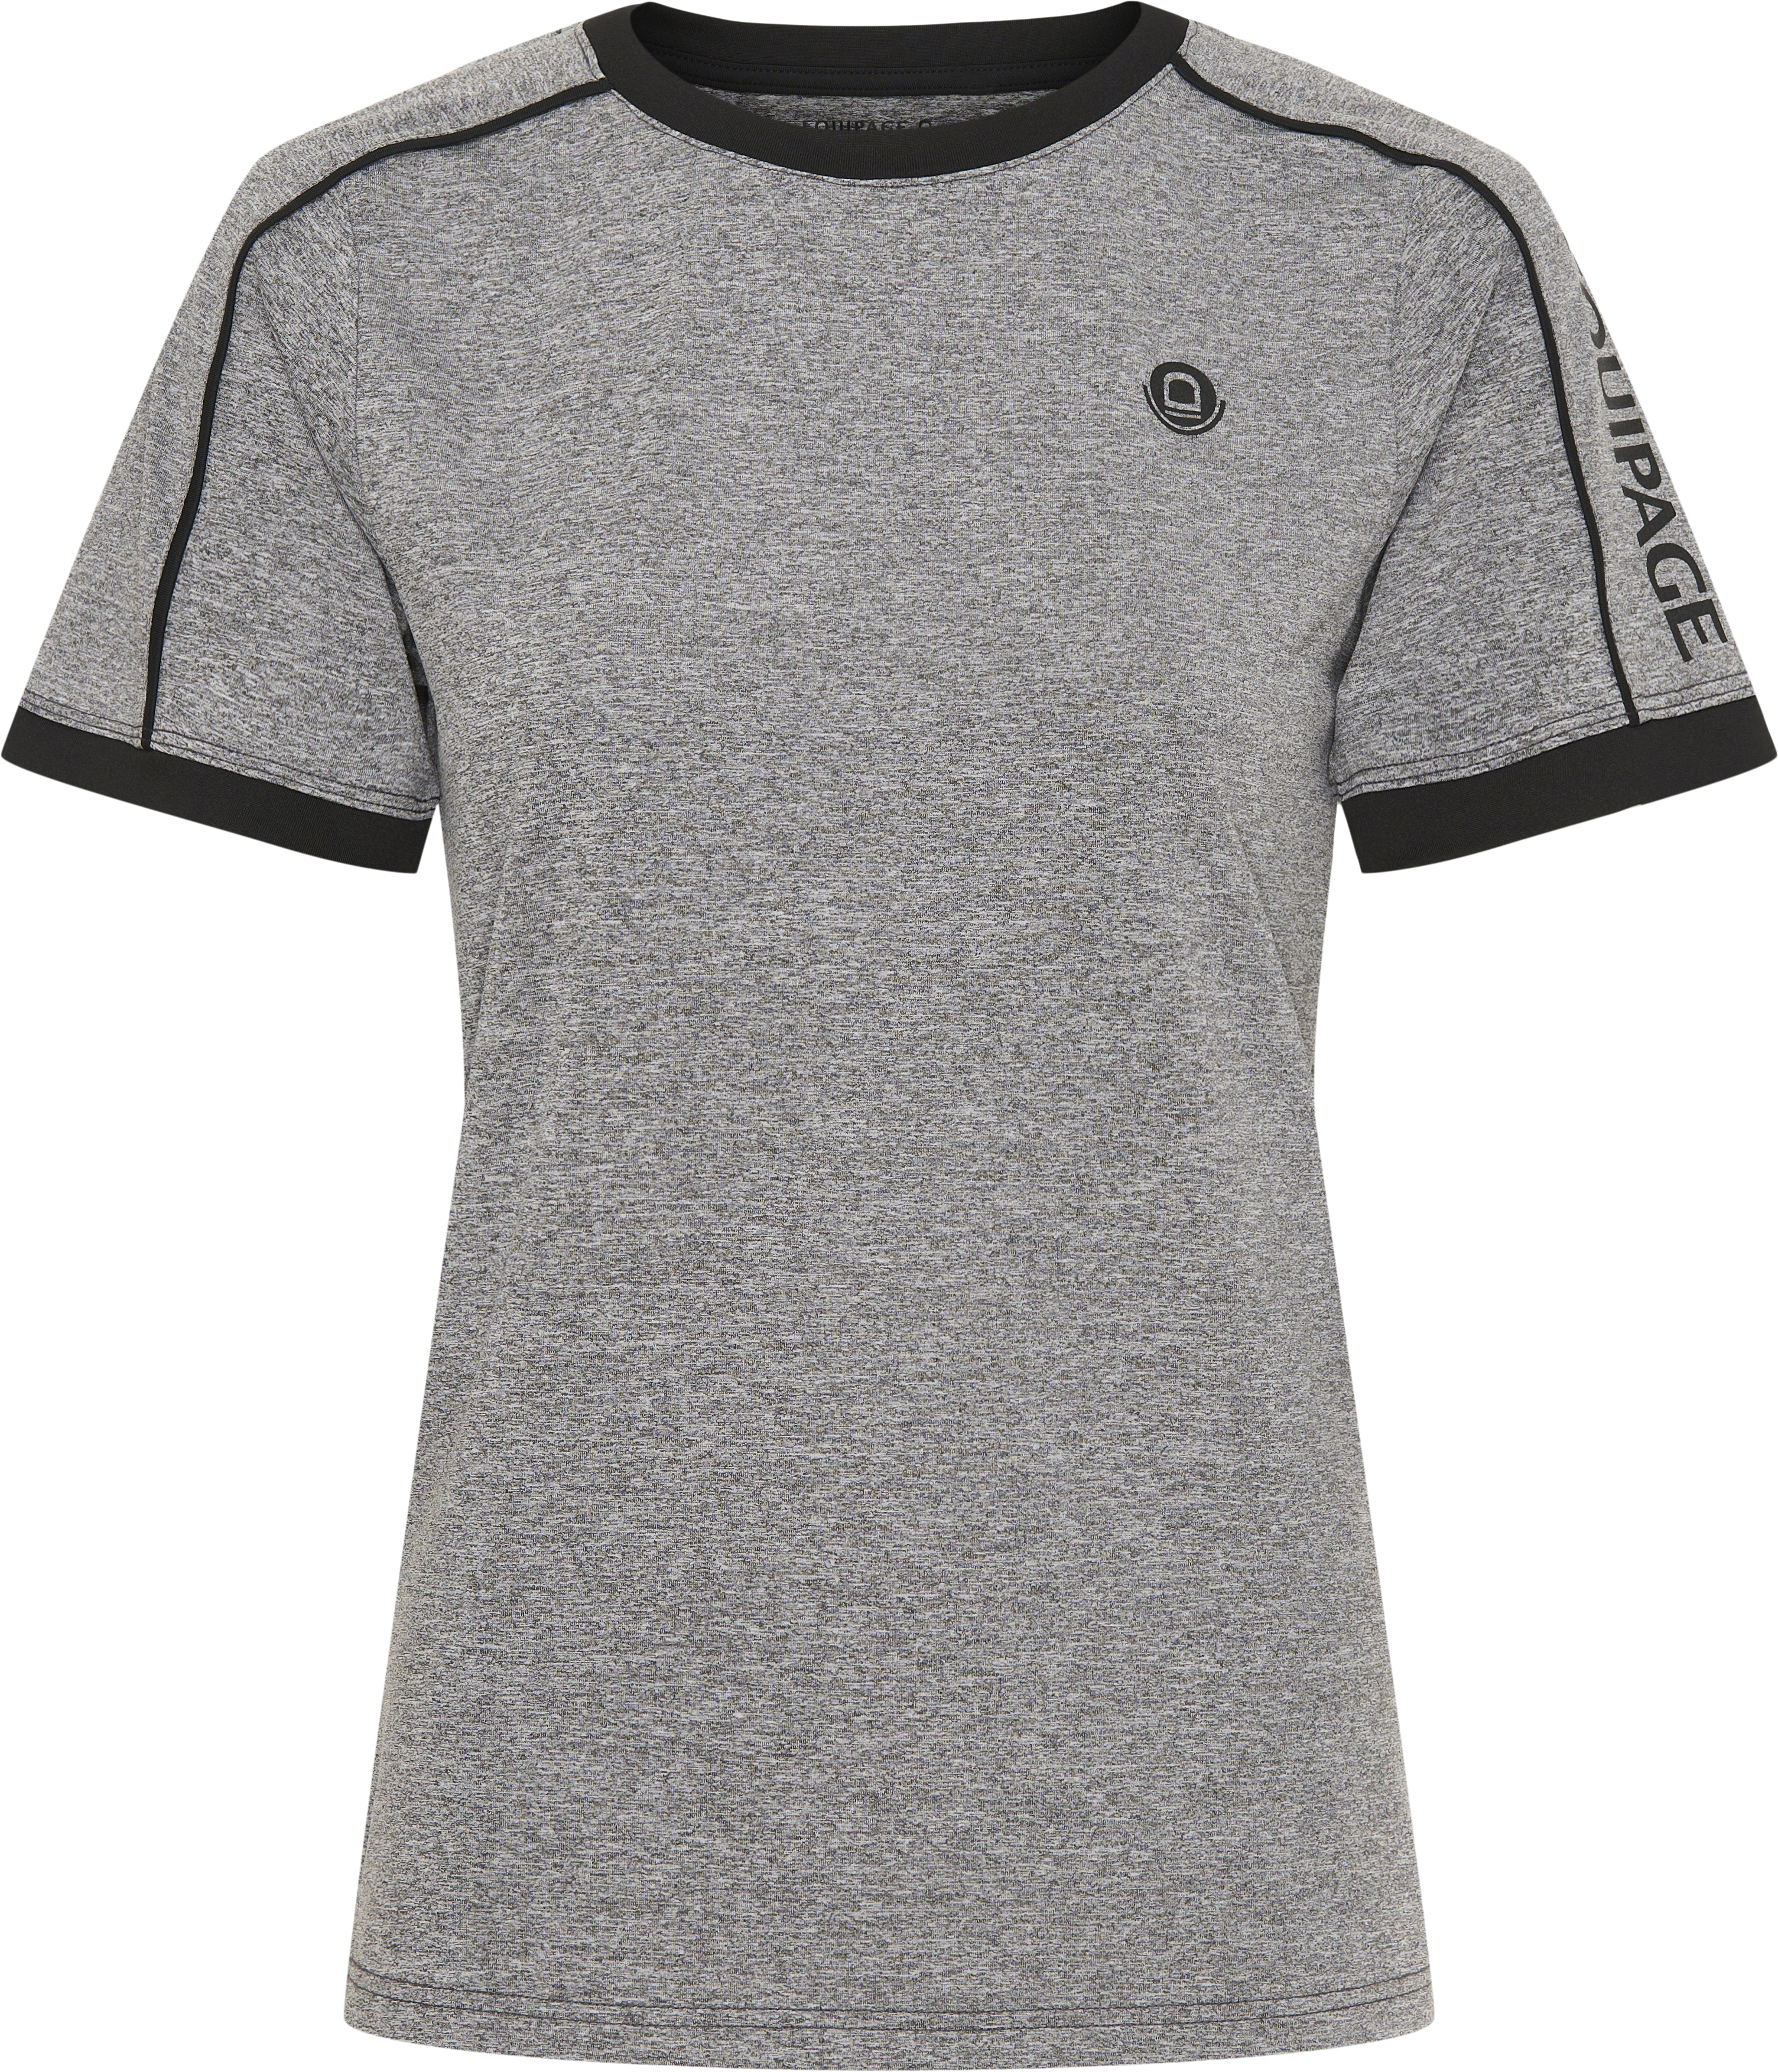 Equipage Melissa T-shirt - Grey Melange (L)